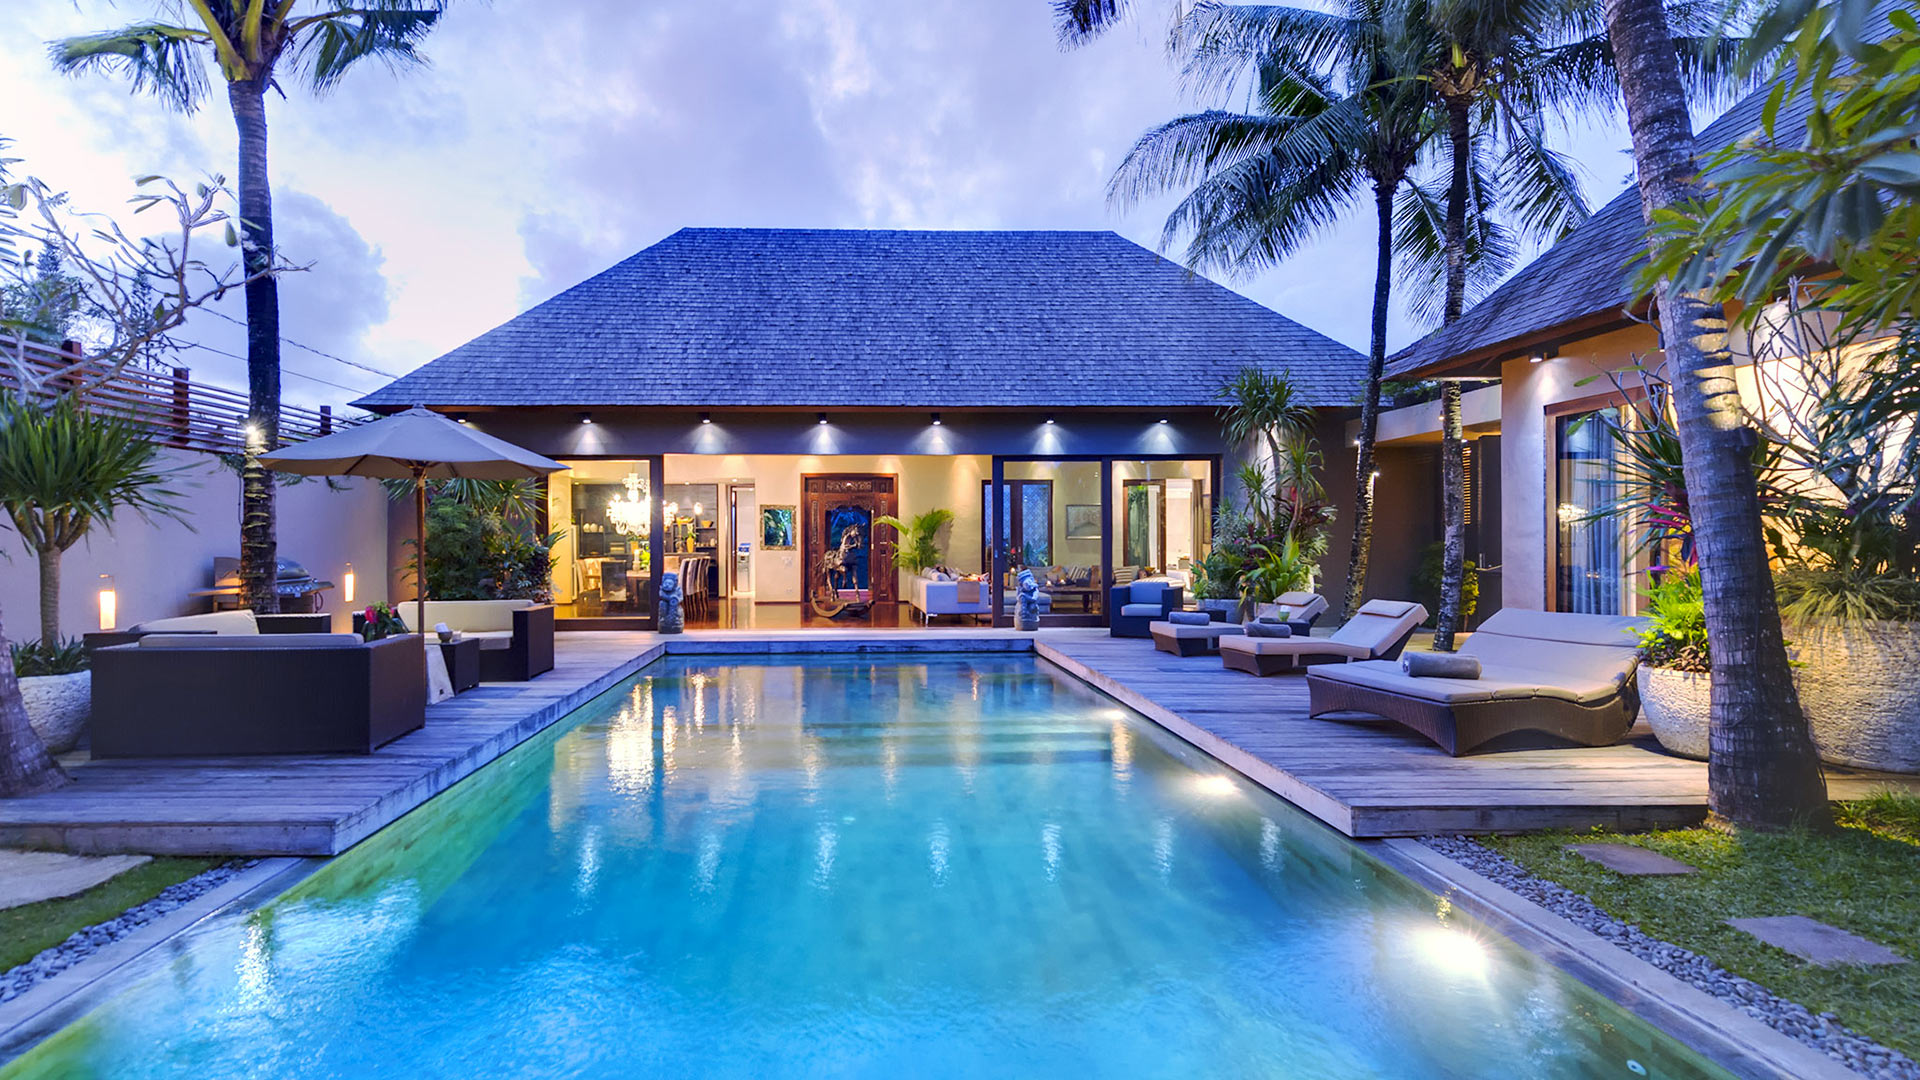  Villa  Eshara I Alquiler de casa en Bali  Suroeste 